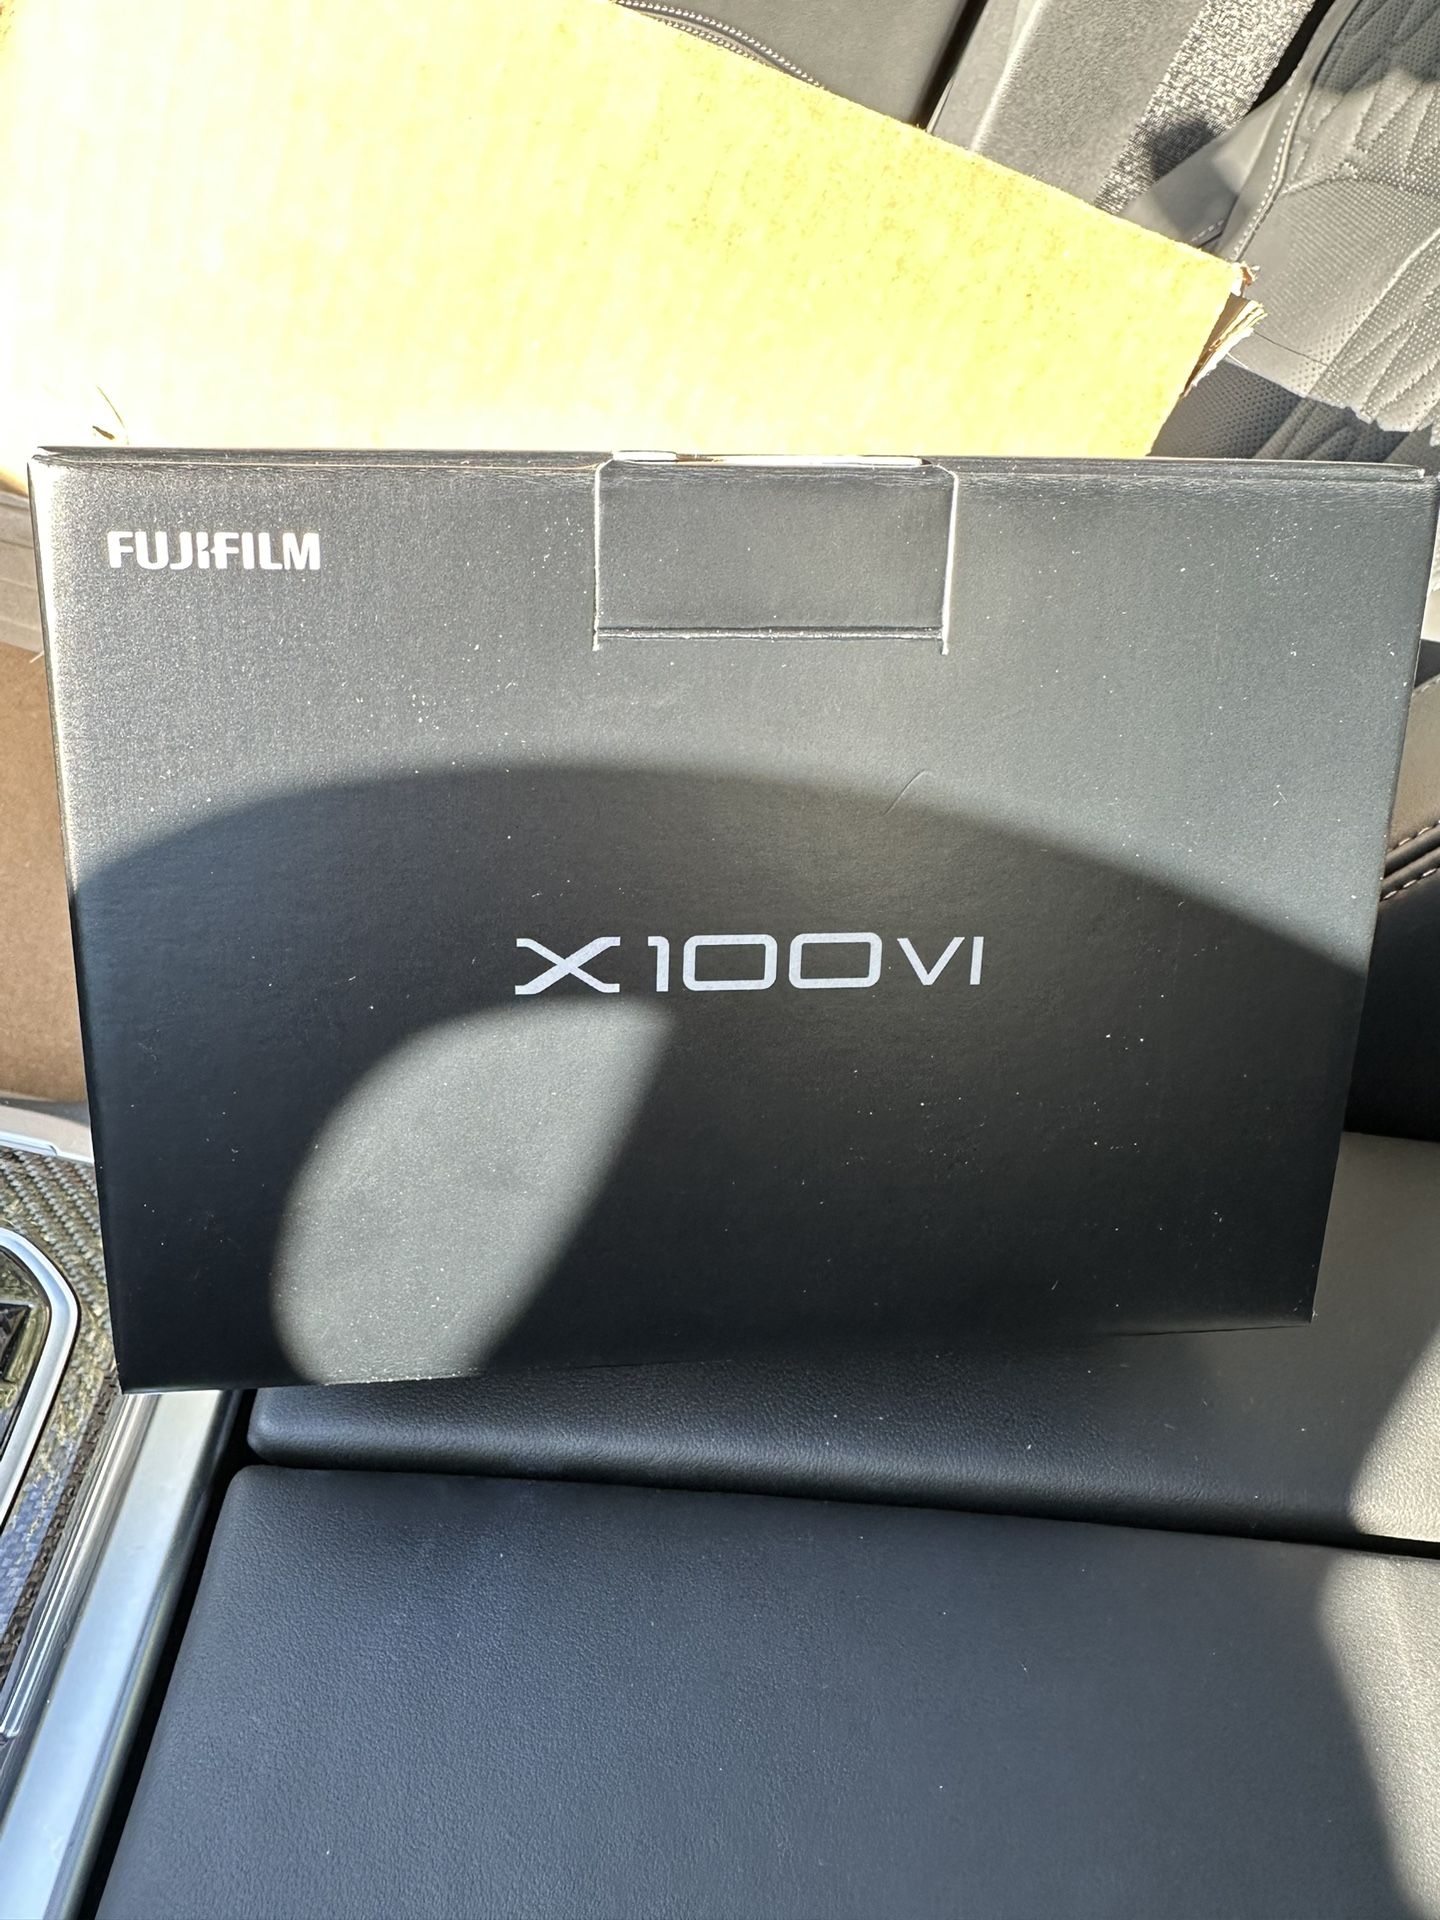 Brand New FUJIFILM x100vi Silver Fuji Camera